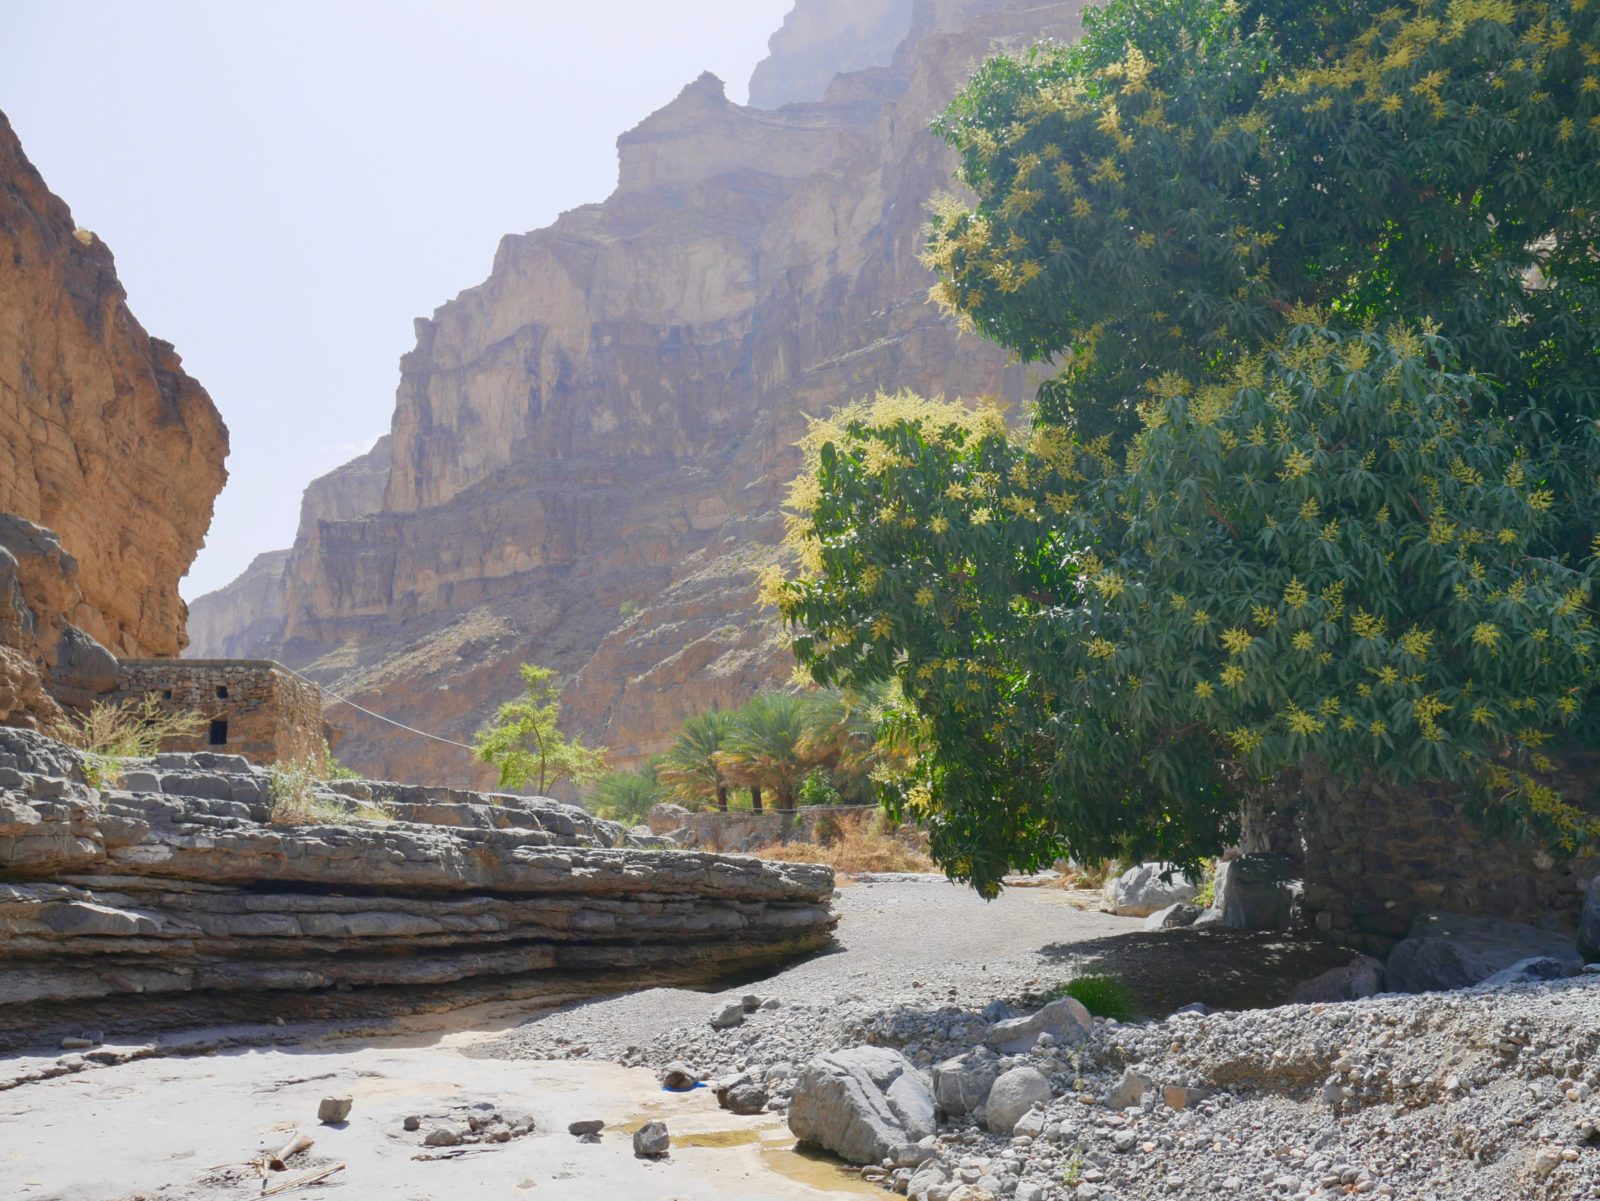 Das Wadi Nakhar wird auch als der Grand Canyon des Omans bezeichnet. Die 7 km lange Piste bis zum Dorf Al-Nakhar ist nur mit Geländewagen befahrbar. Steile Felswände, teilweise bis zu 2.000 m Höhe ragen an den Seiten empor. Teilweise befällt einen ein etwas beklemmendes Gefühl. Aber die Gegend ist wunderschön und einmalig.